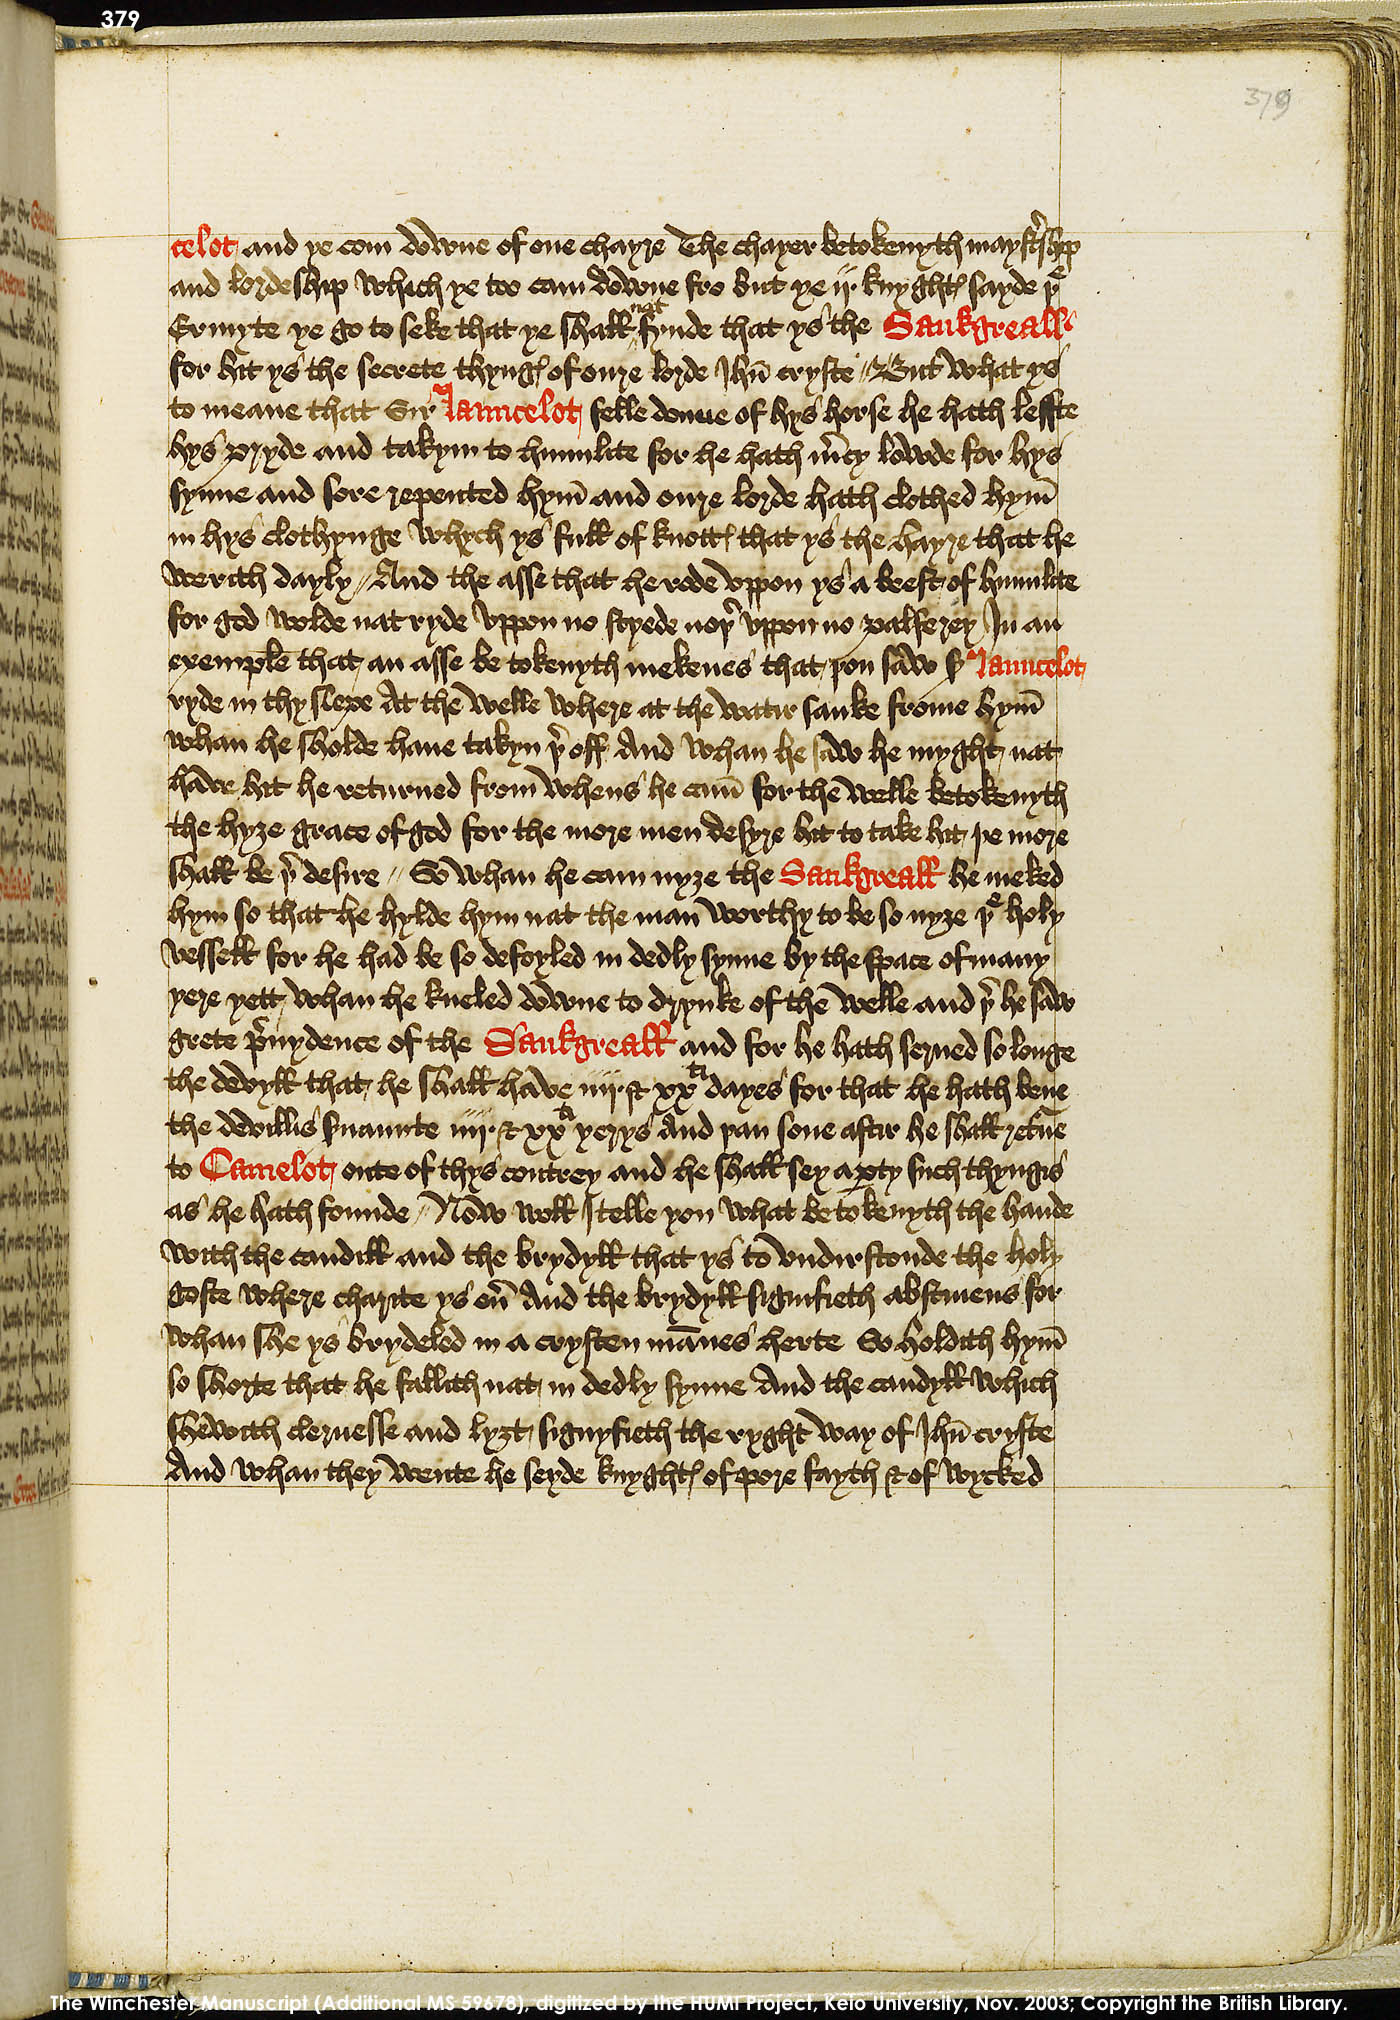 Folio 379r